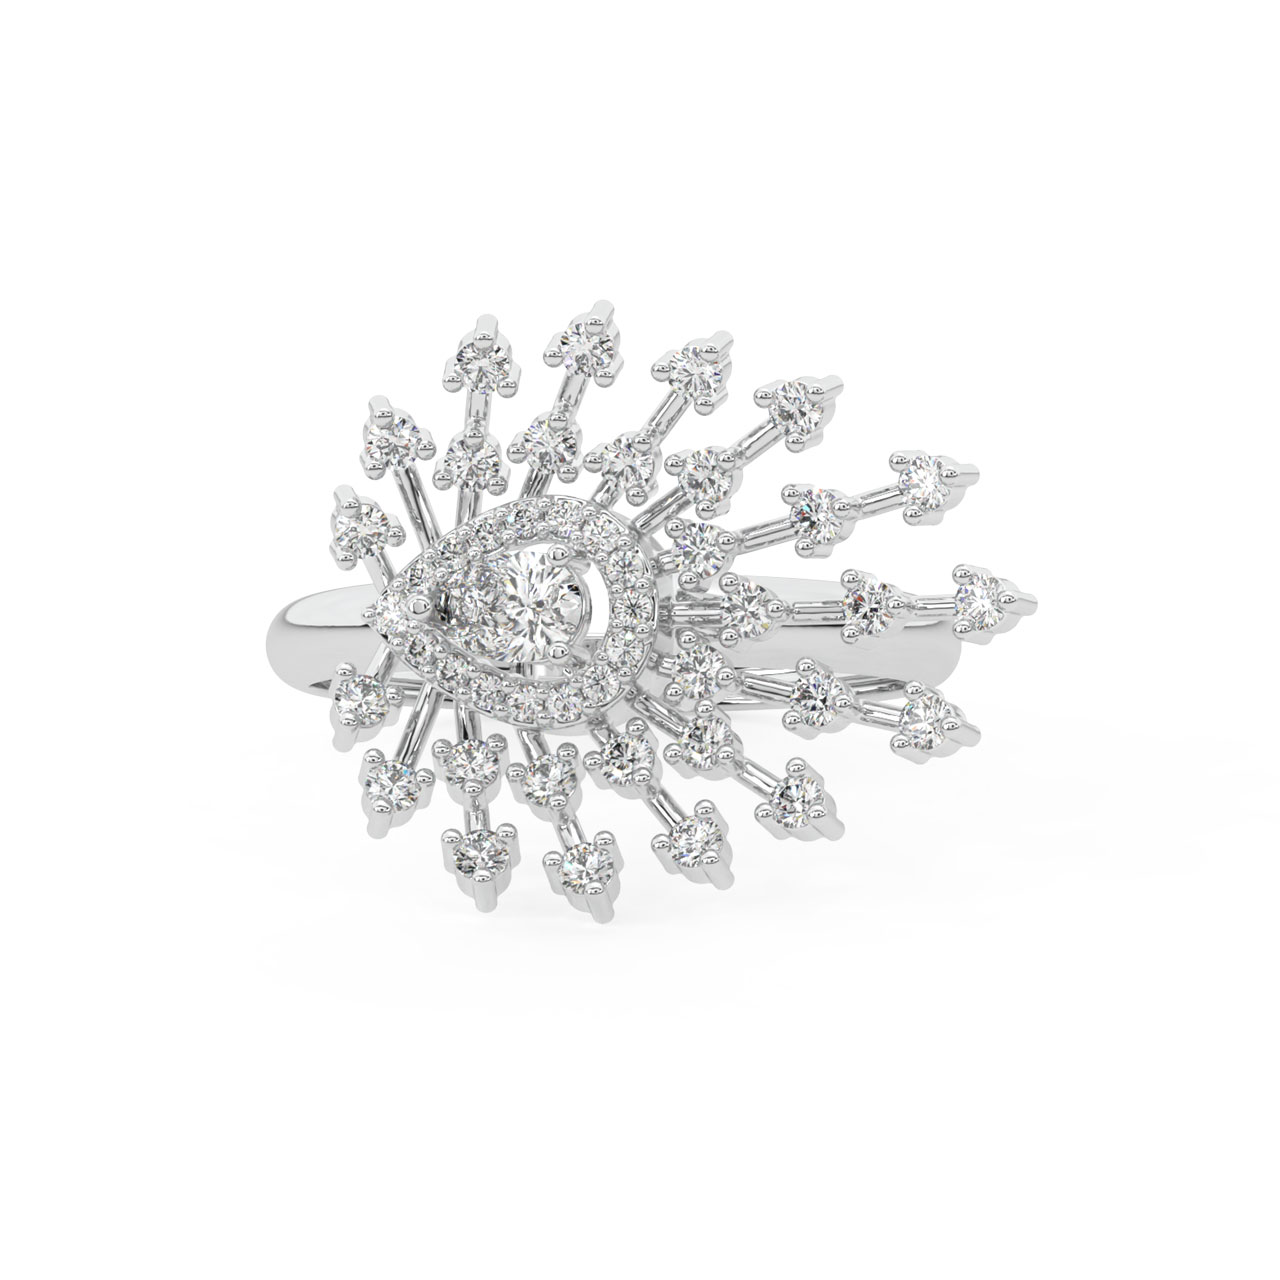 Amirah Round Diamond Engagement Ring